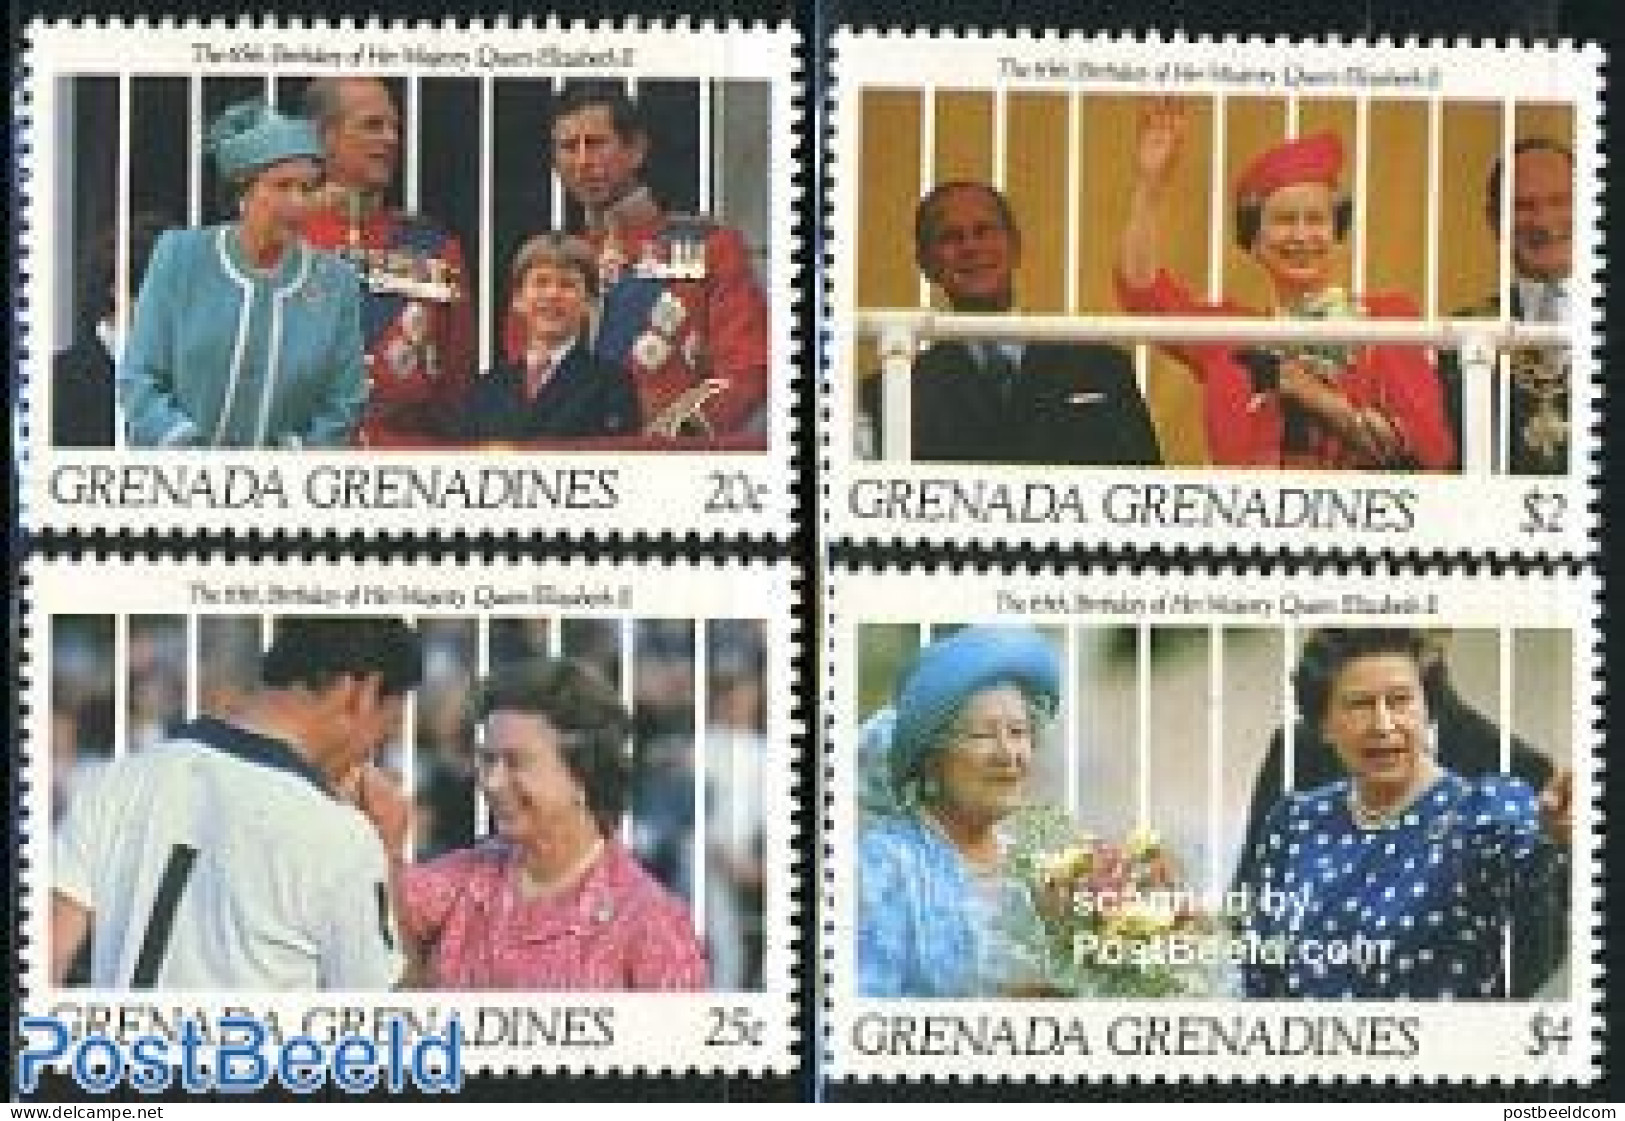 Grenada Grenadines 1991 Elizabeth II 65th Birthday 4v, Mint NH, History - Kings & Queens (Royalty) - Königshäuser, Adel